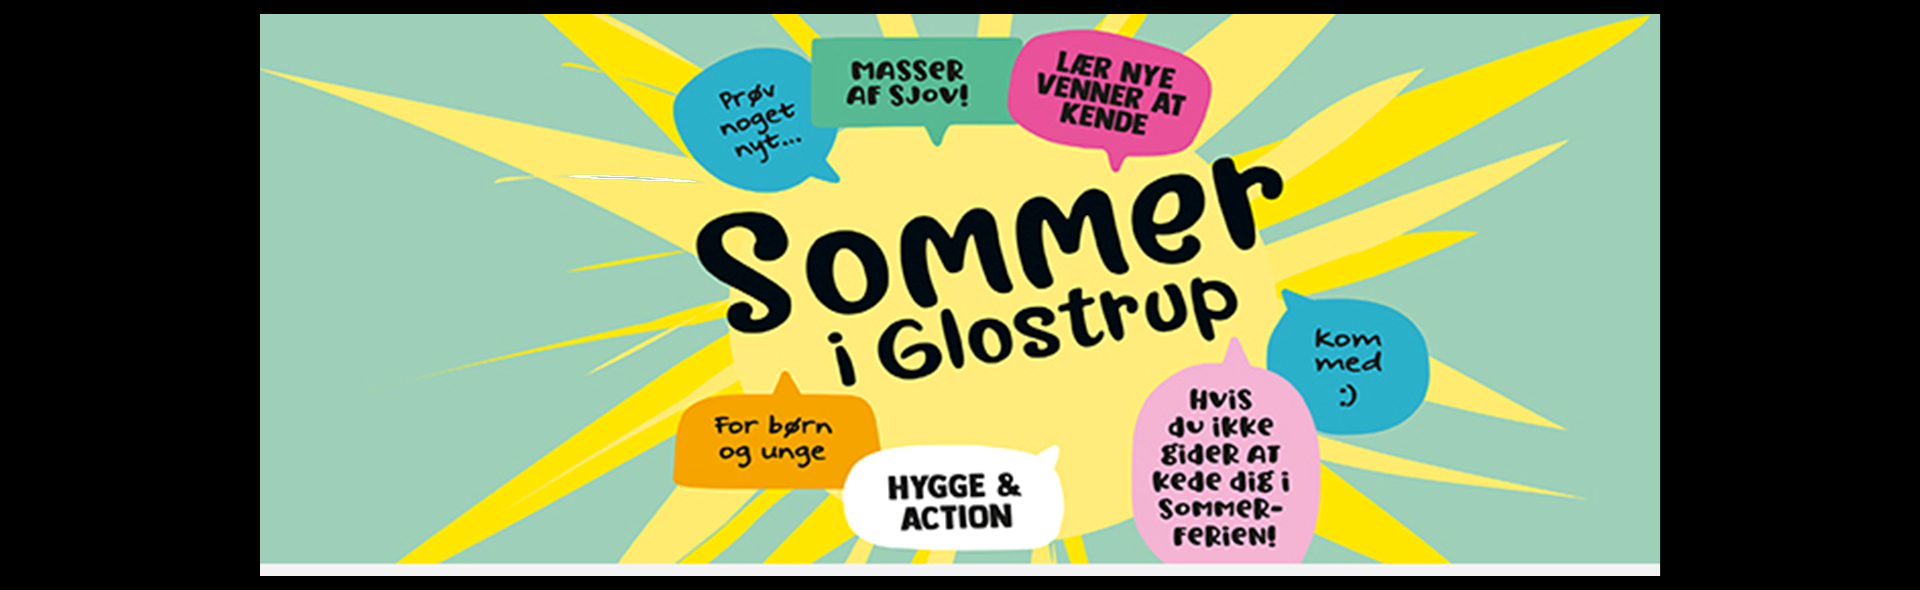 Sommerbio i ferien_slide_poster